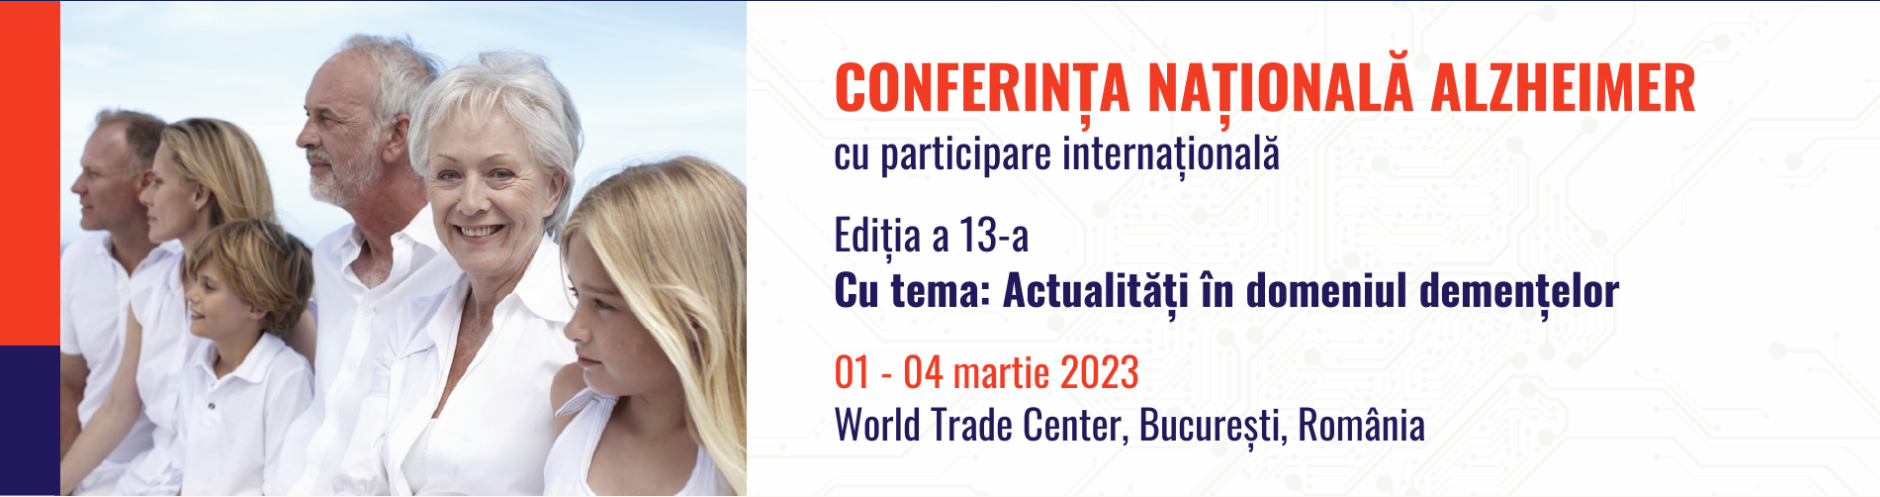 Conferința Națională Alzheimer 2023: București, 1-4 martie